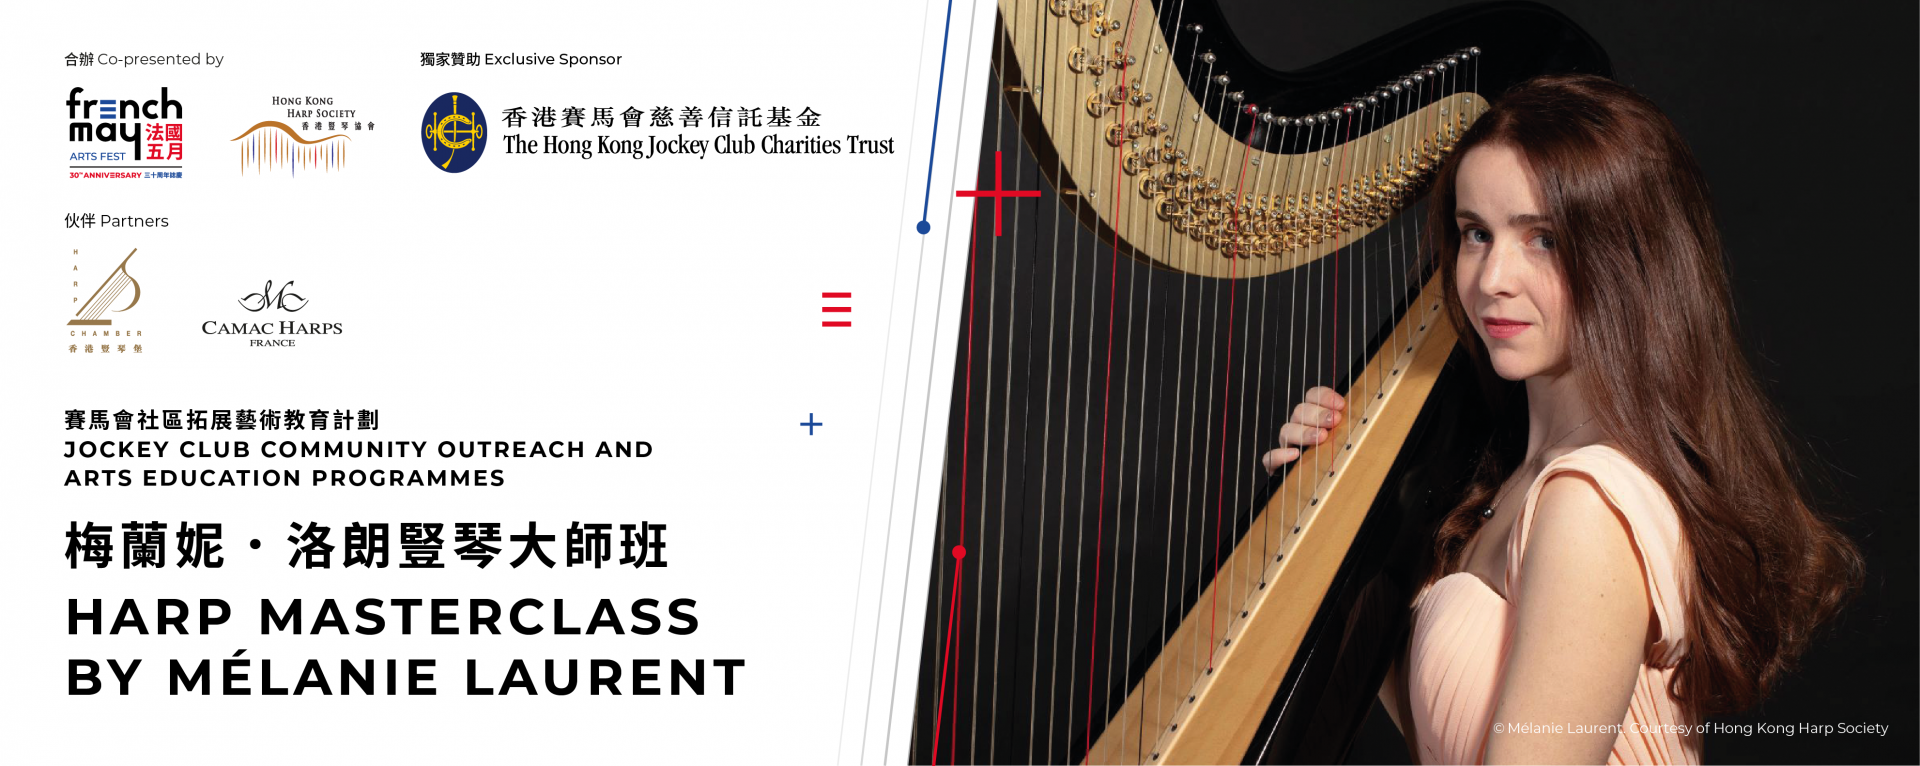 Harp masterclass by Mélanie Laurent